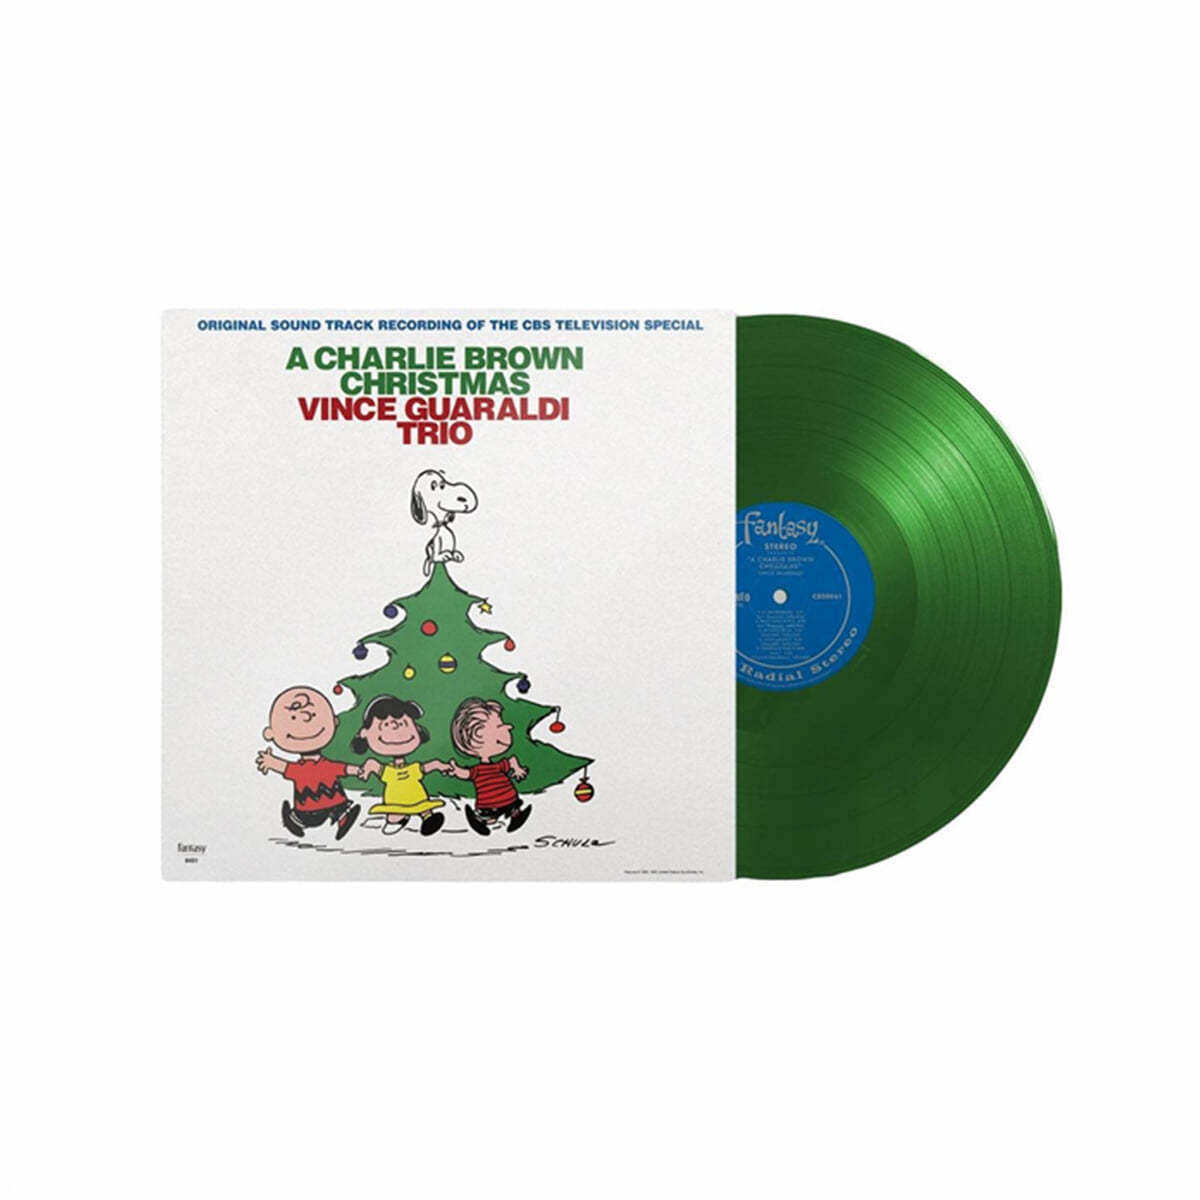 예약판매[PRE-ORDER] 찰리 브라운 크리스마스 음악 (A Charlie Brown Christmas OST by Vince Guaraldi Trio) [크리스마스 트리 그린 컬러 LP]